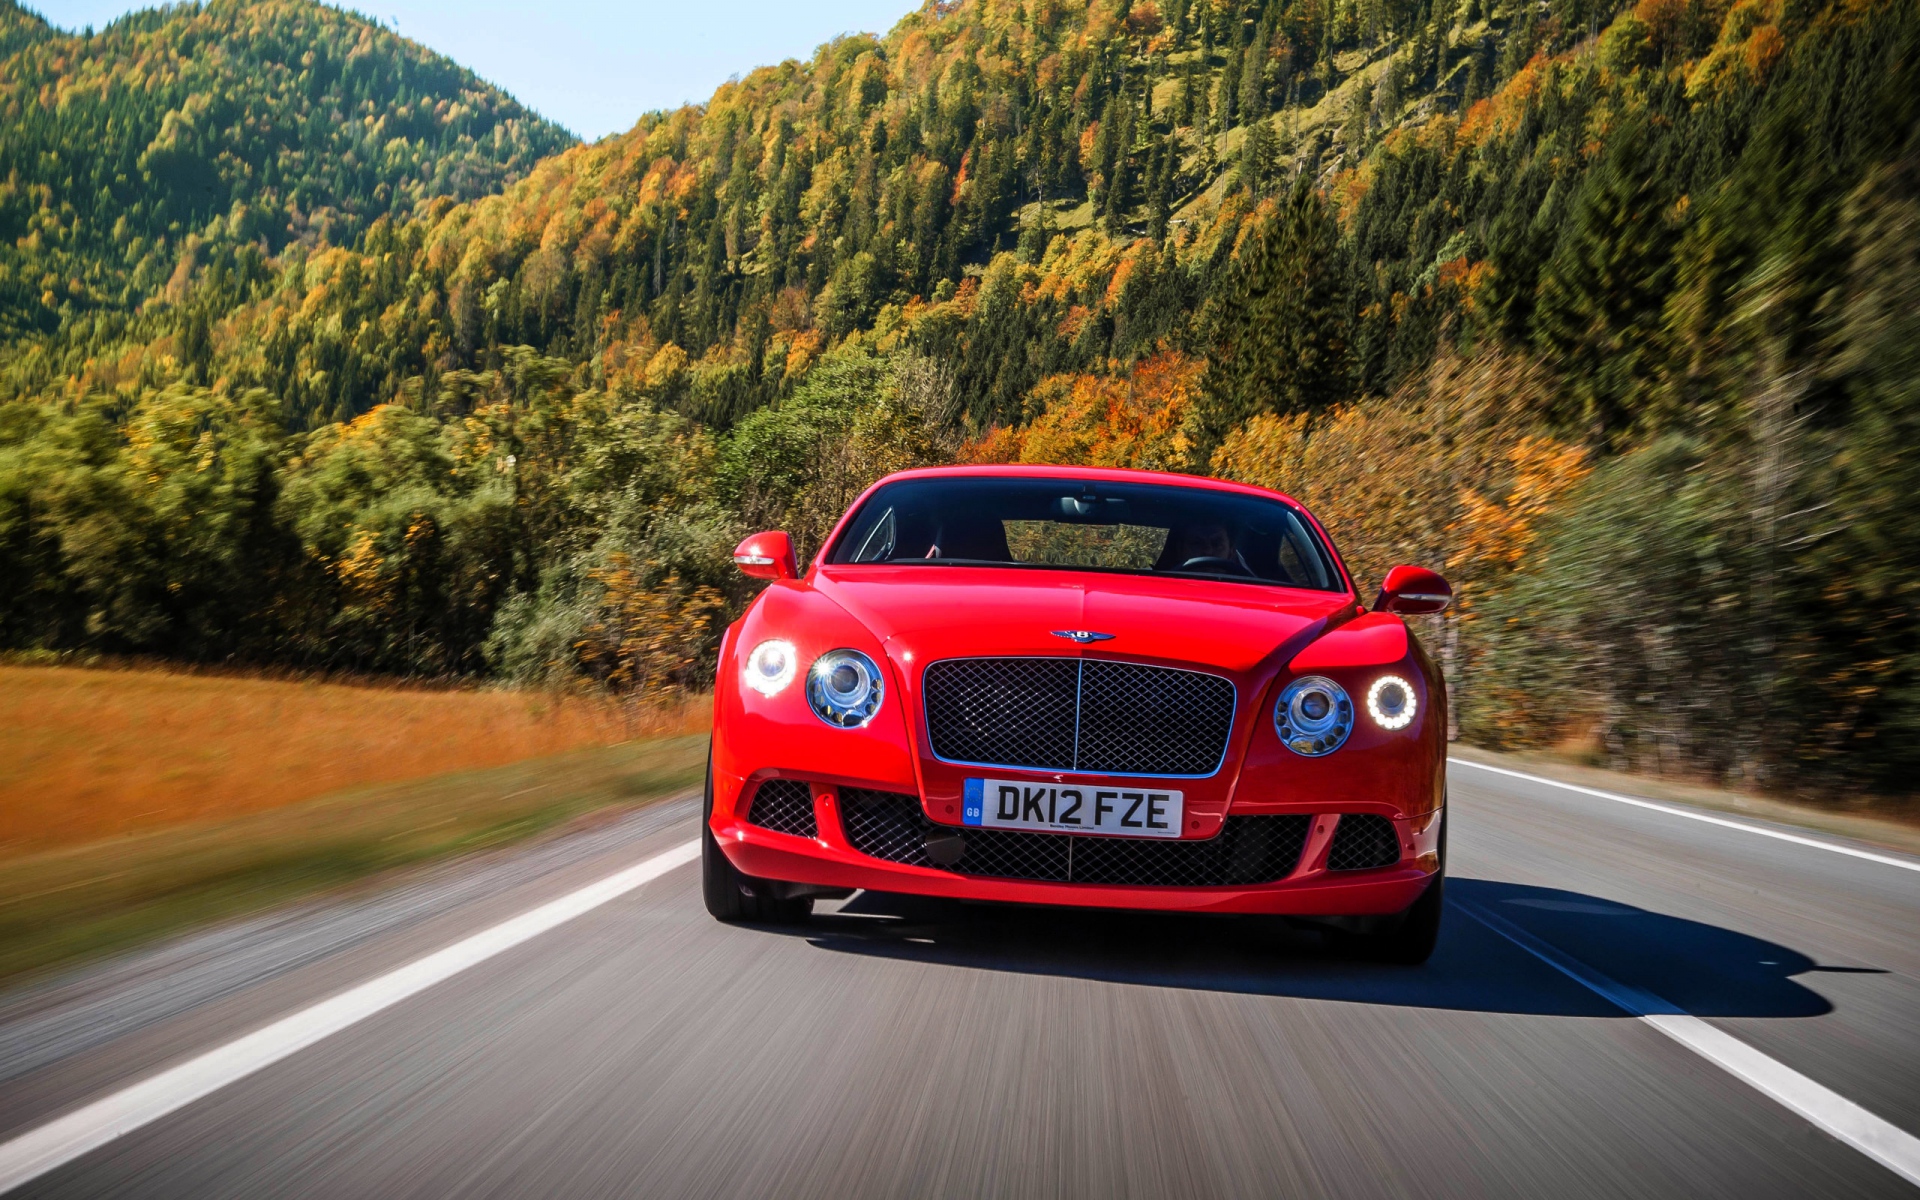 Картинки Bentley, континентальная, г.т., красный, вид спереди, движение, скорость, дорога фото и обои на рабочий стол